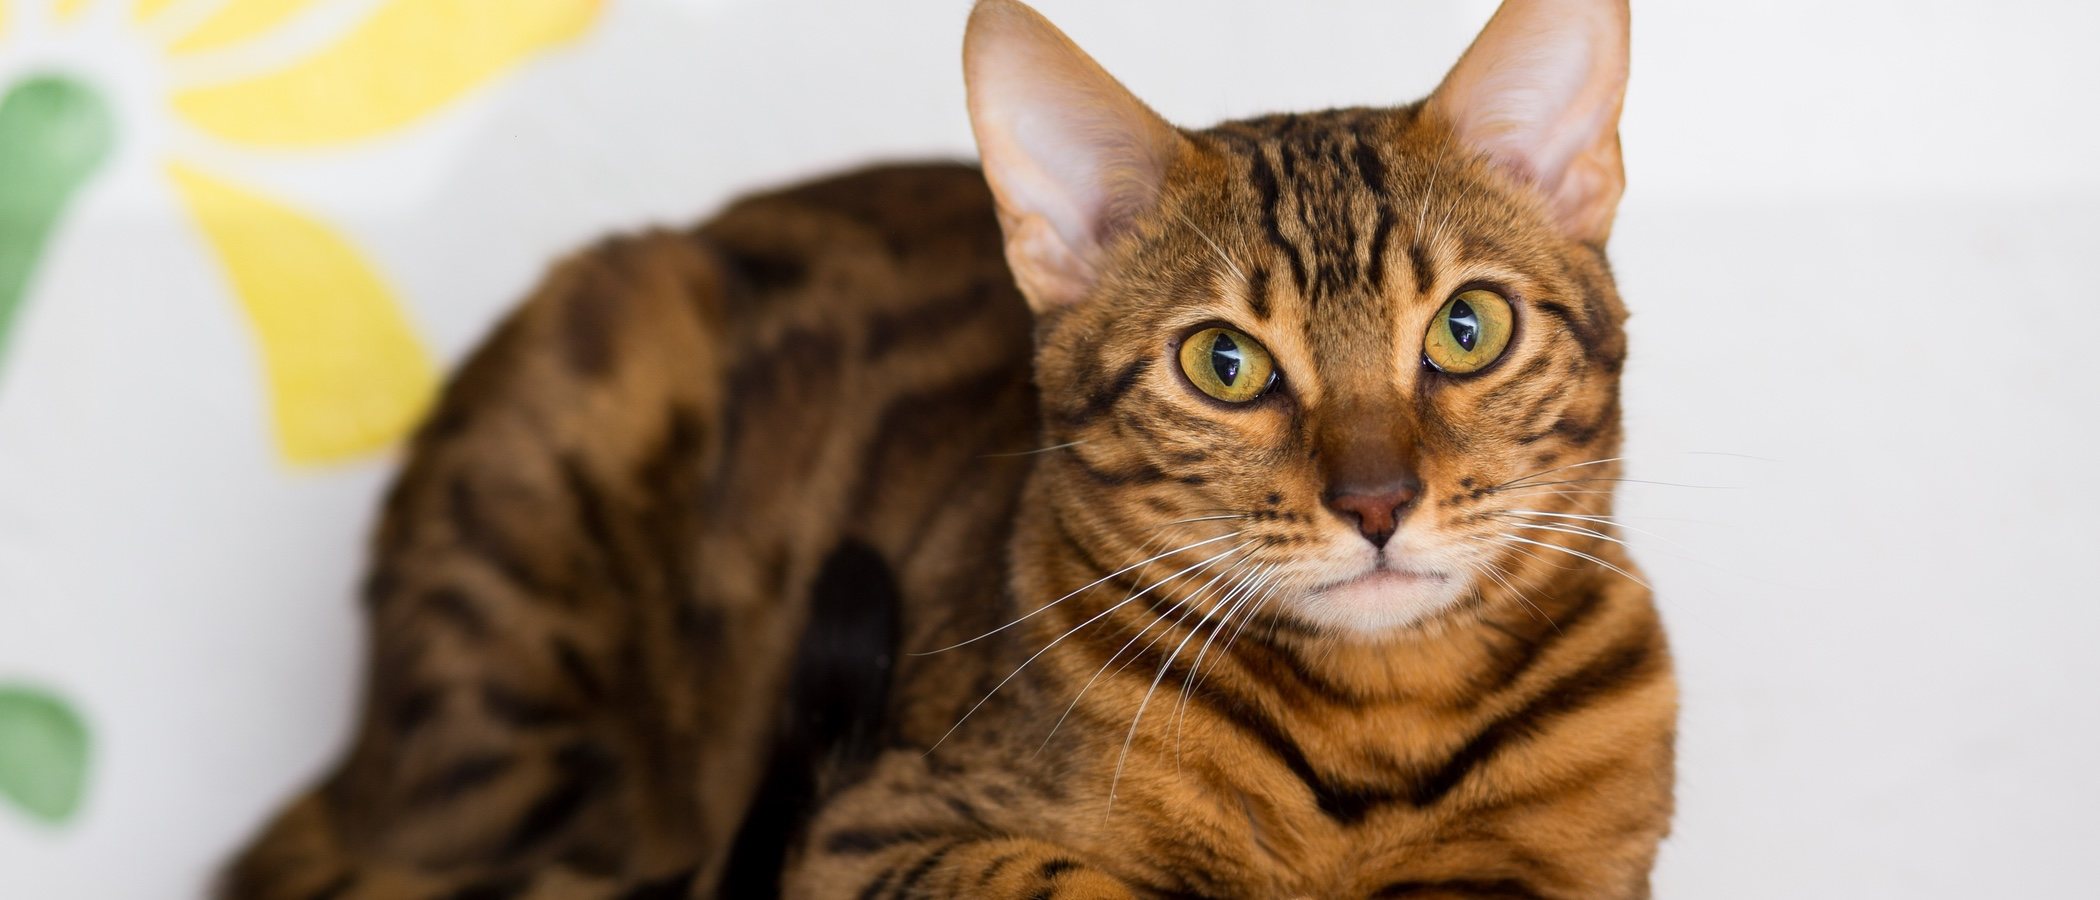 Displasia de cadera en gatos: Todo lo que necesitas saber